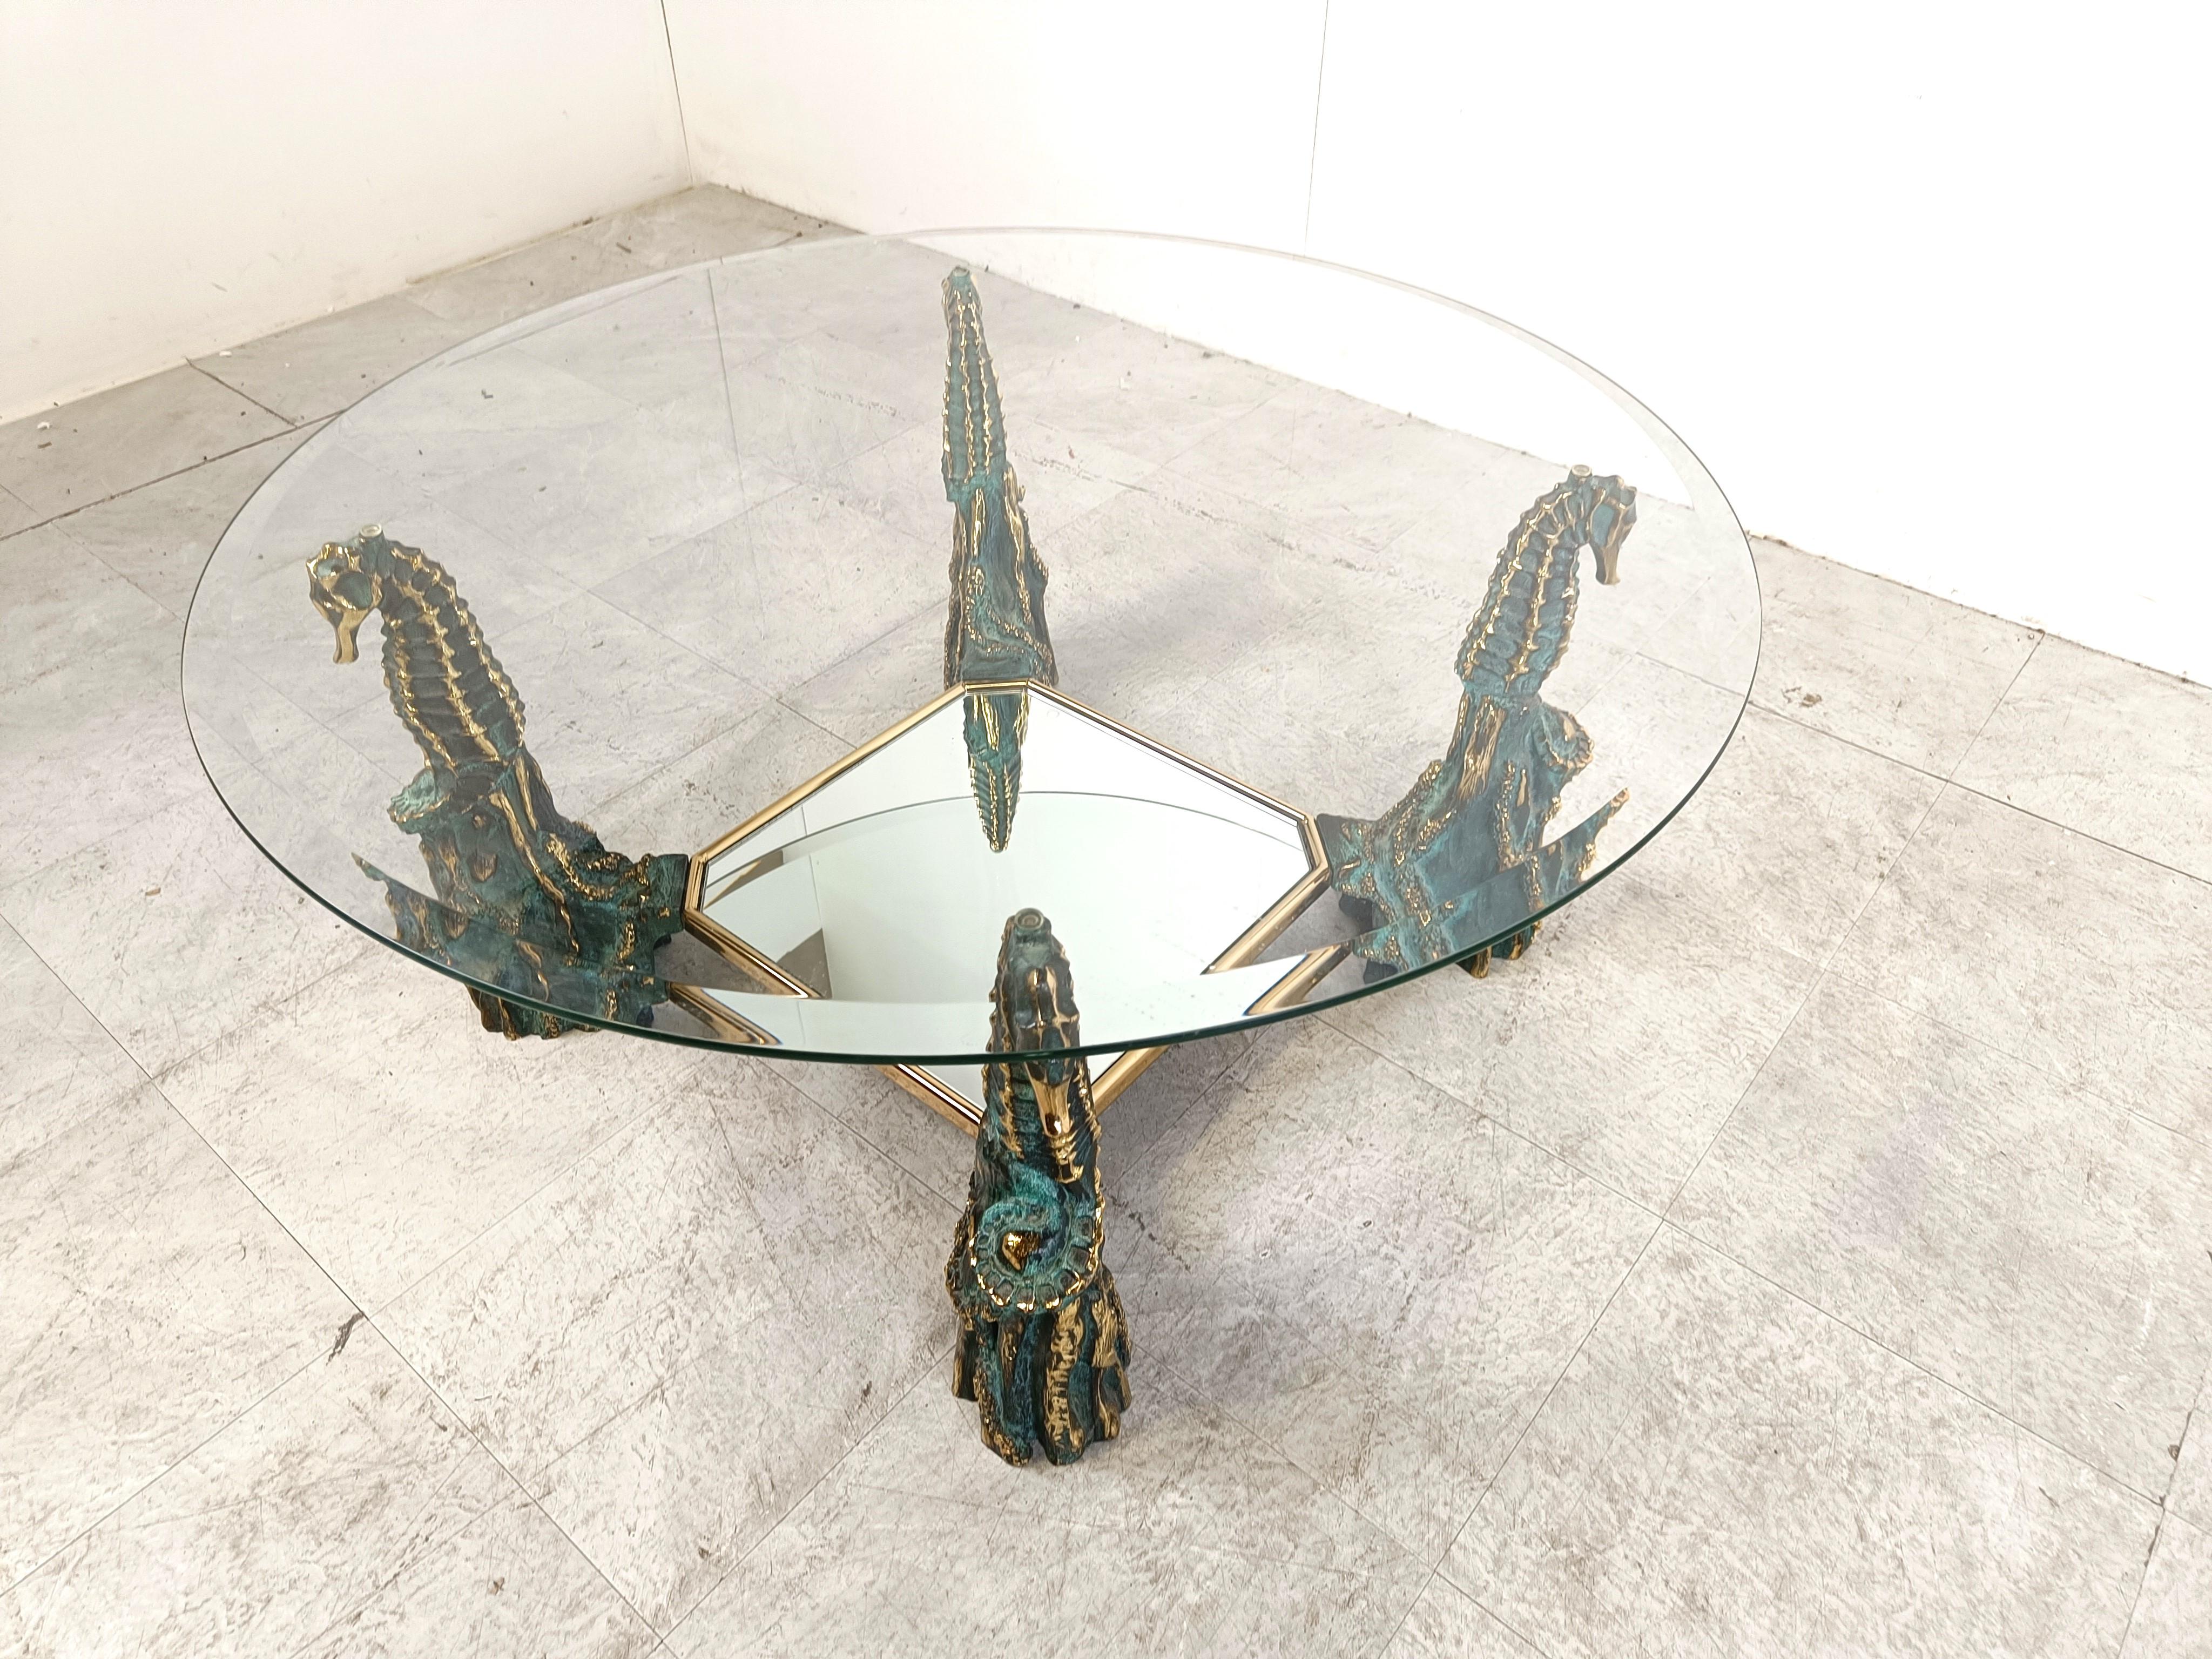 Skulpturaler Couchtisch in Form eines bronzenen Seepferdchens mit runder Klarglasplatte und verspiegelter Glasablage.

Nach dem Vorbild von Maison Jansen

Hergestellt in Belgien in den 1960er Jahren 

Guter Zustand

Höhe: 42cm/16.53